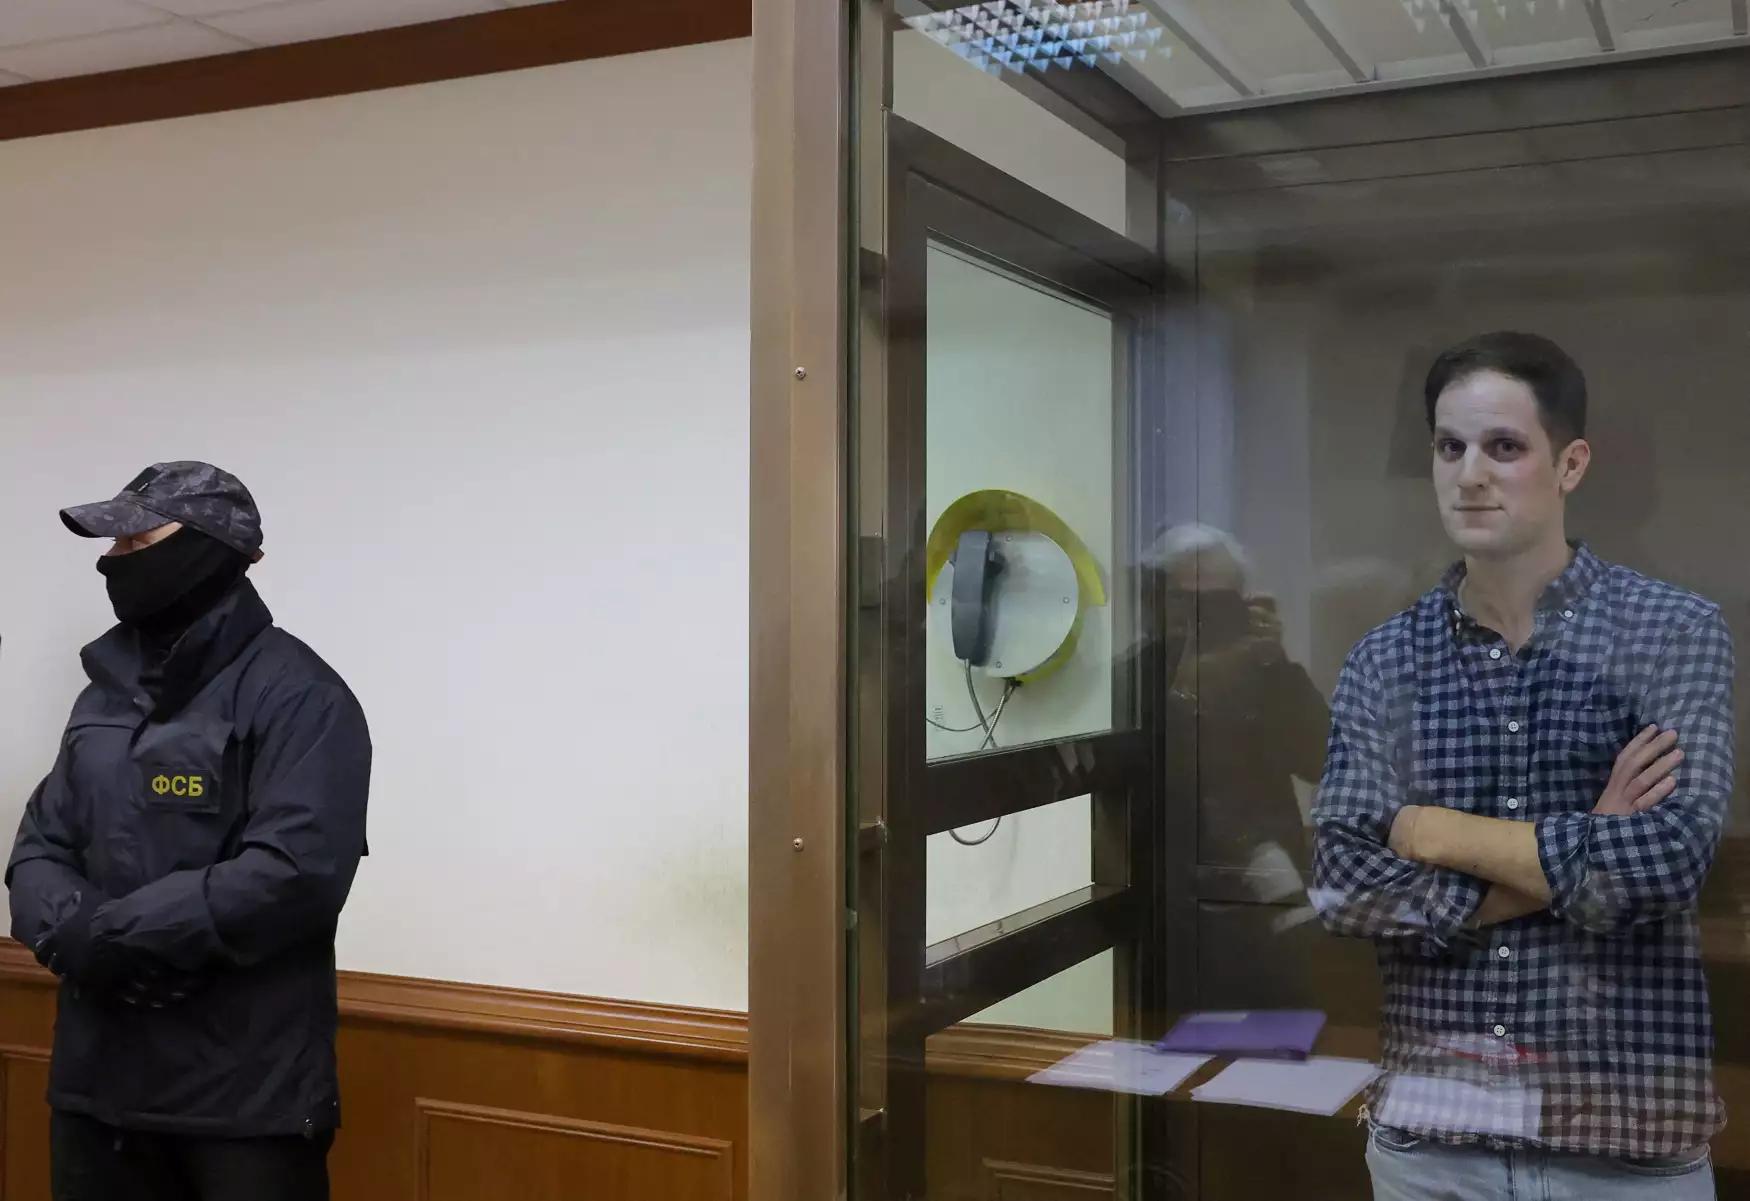 Έβαν Γκέρσκοβιτς - Ρωσία: Μέσα σε γυάλινο κλουβί ο κρατούμενος Αμερικανός δημοσιογράφος 